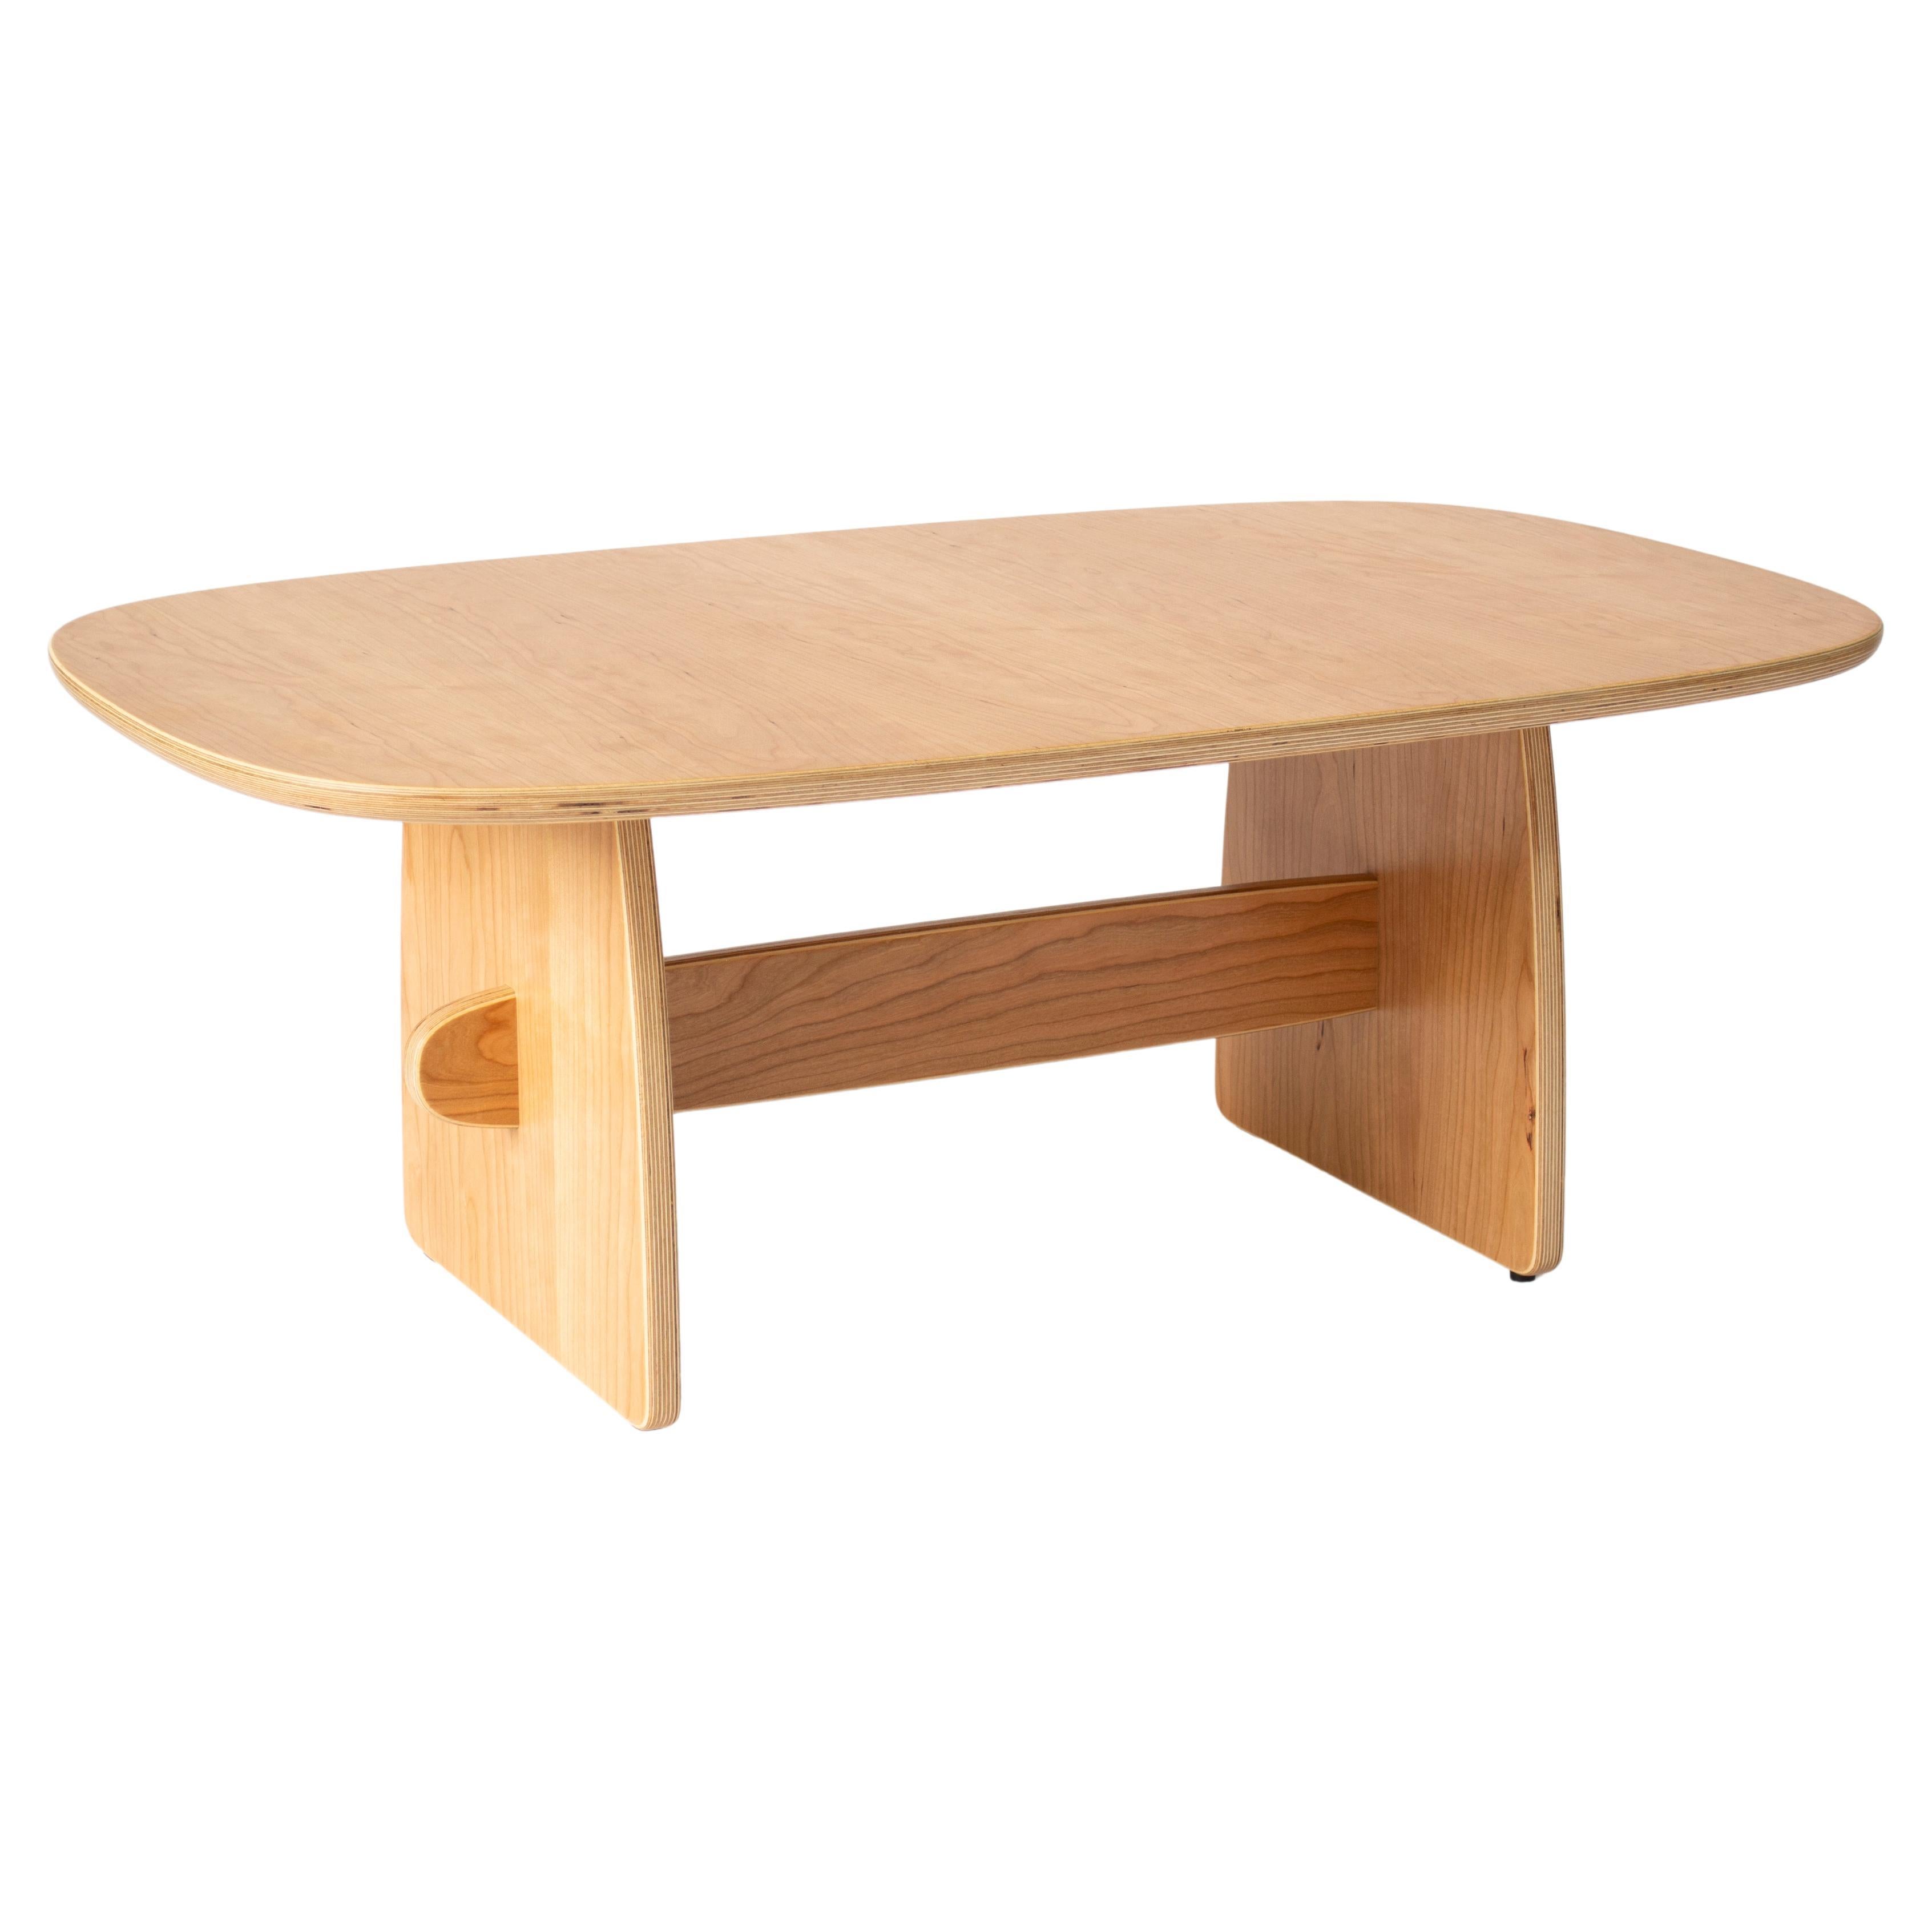 Woodbine coffee table in cherry veneer hardwood plywood by KLN Studio